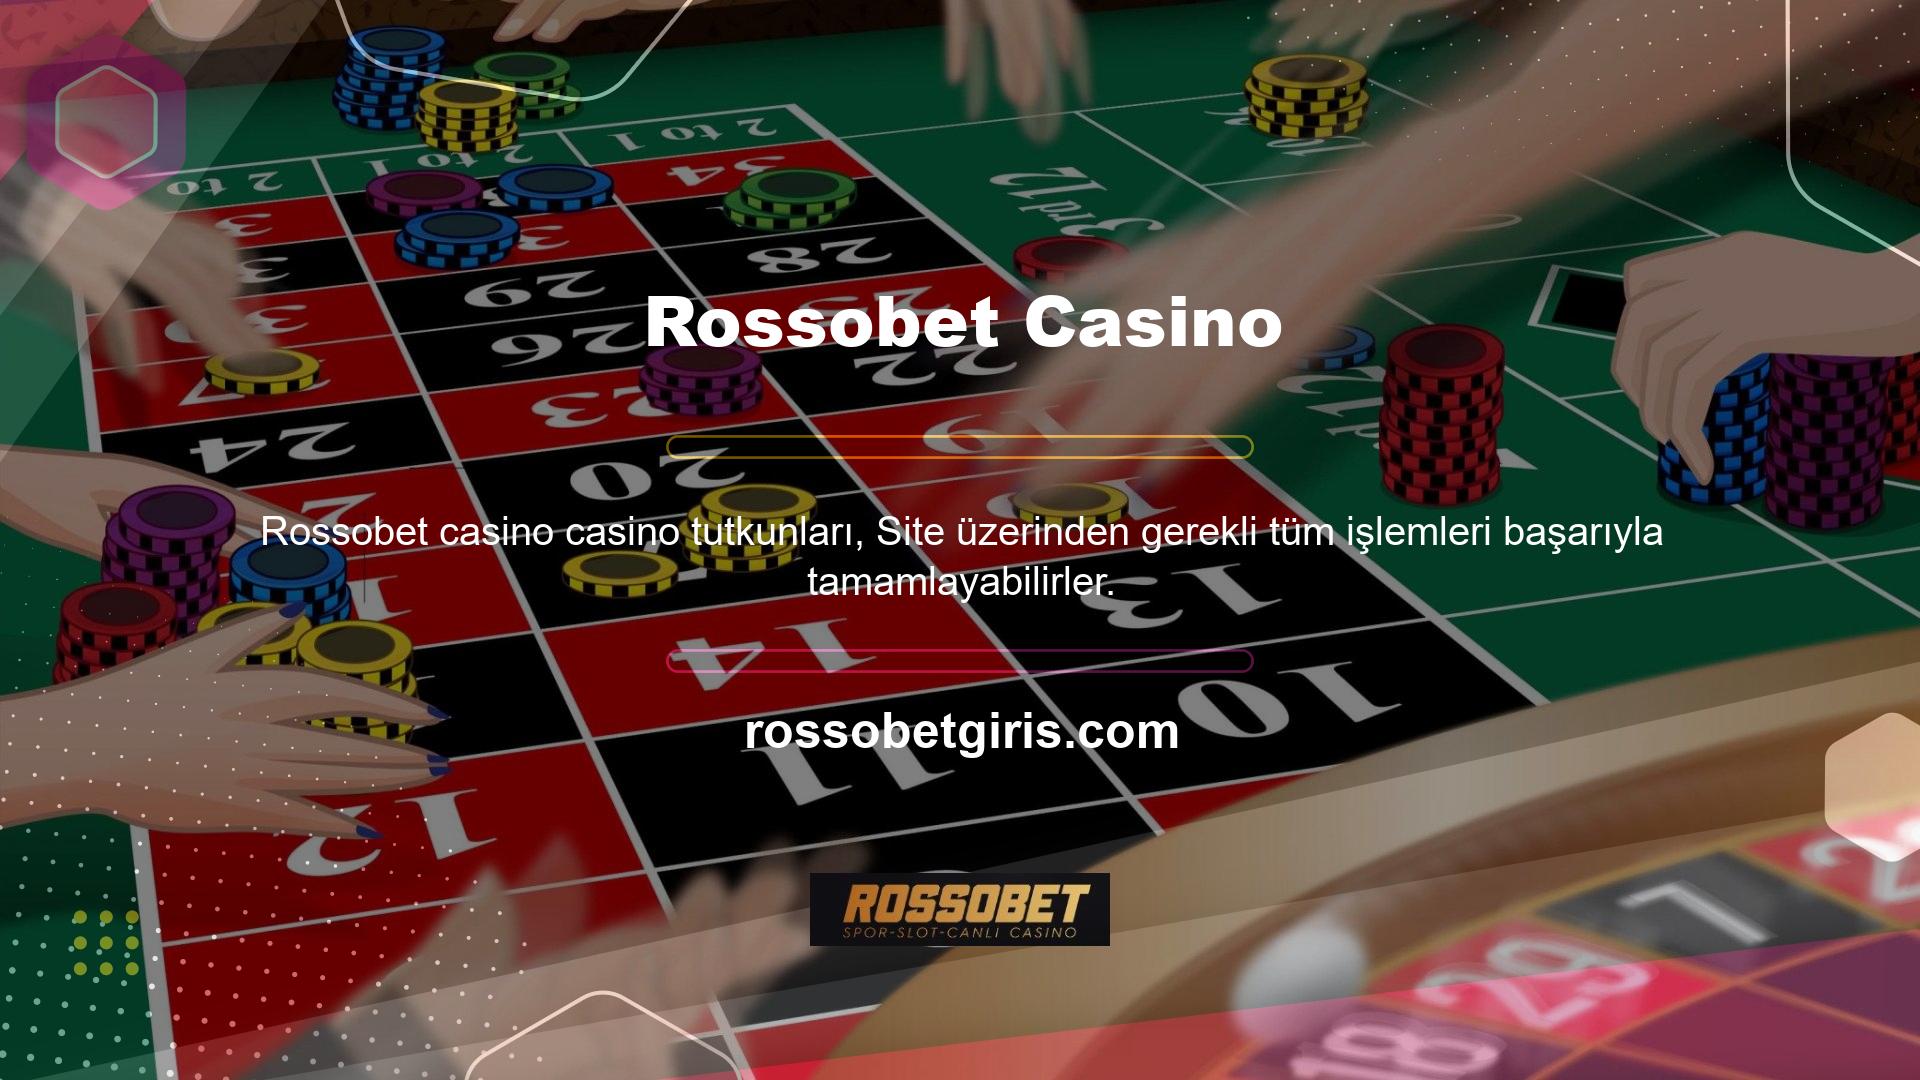 Kaliteli bir site olan Rossobet üye olarak yapabileceğiniz tek şey çok çeşitli oyun ve bonusların tadını çıkarmaktır